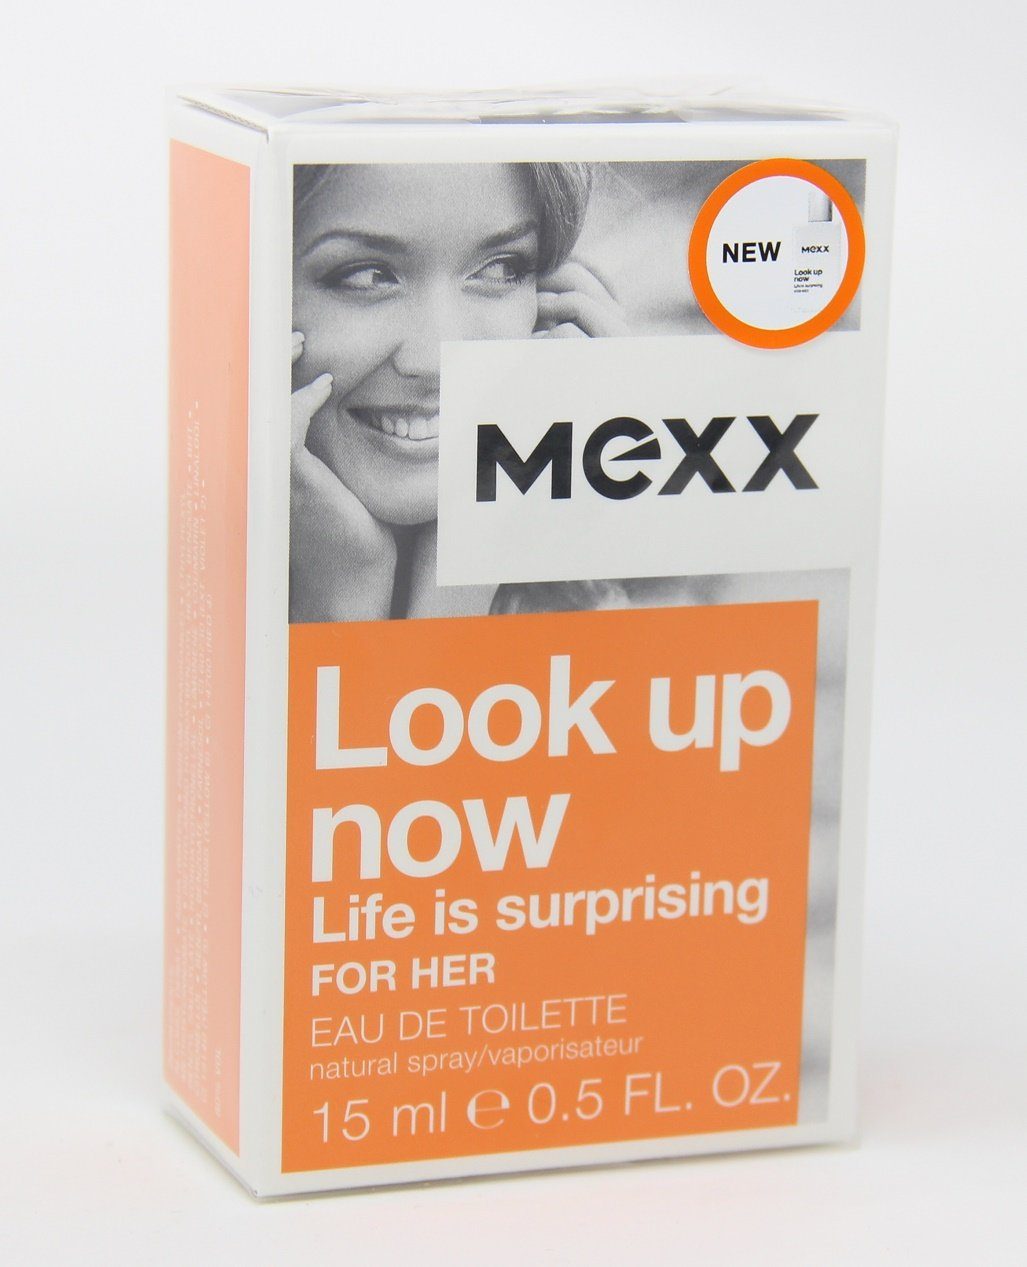 Mexx Toilette for Eau - now EdT Look up de Mexx Toilette 15 Eau de her ml woman